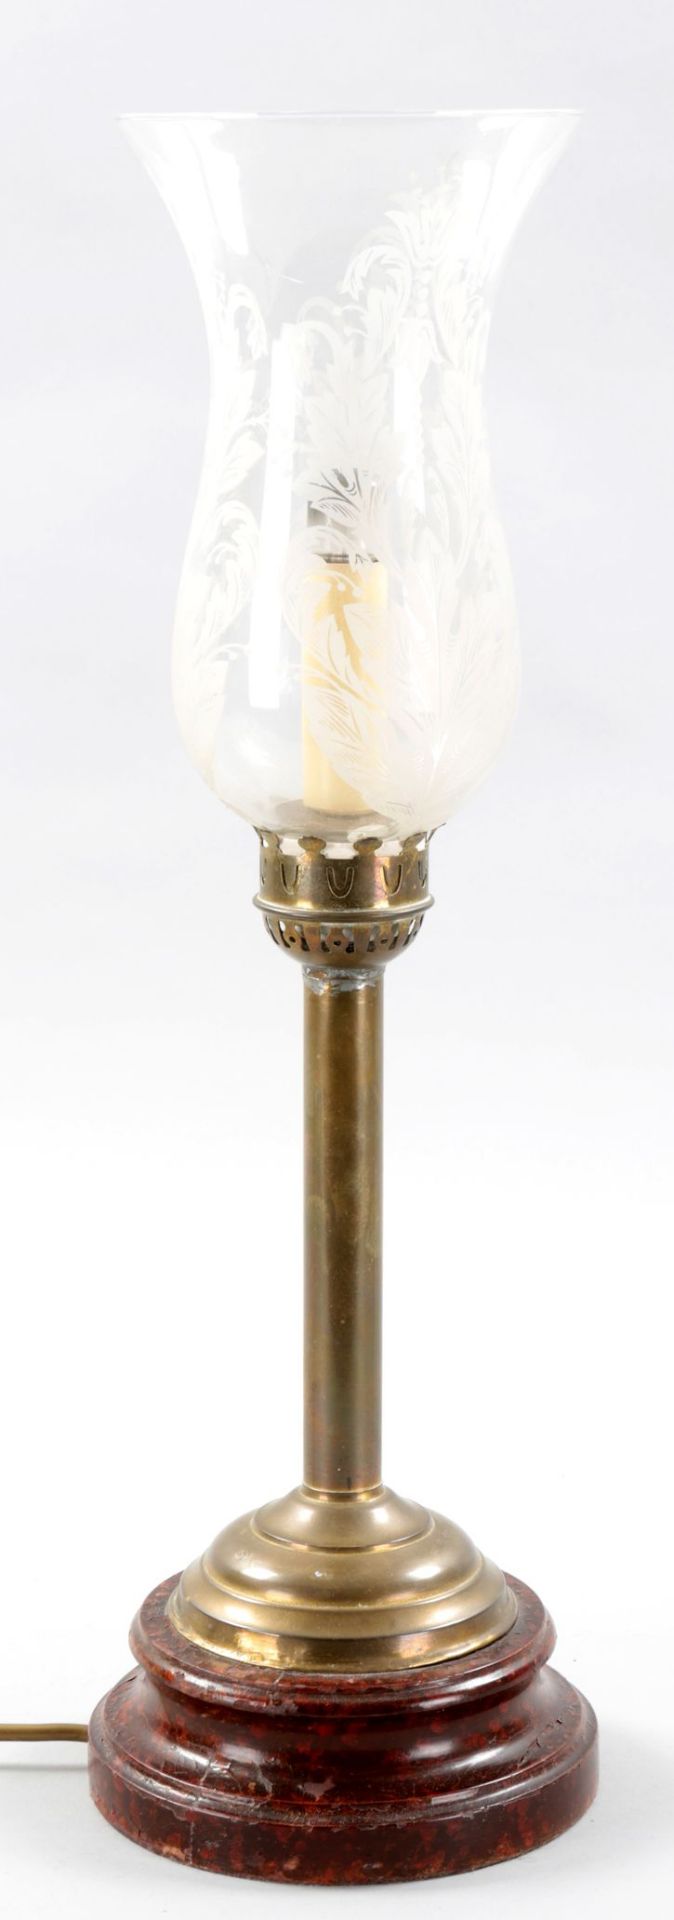 TischlampeHolz/Metall/Glas, 20.Jh. Gewölbter Rundfuß m. glattem Schaft auf profiliertem Sockel (